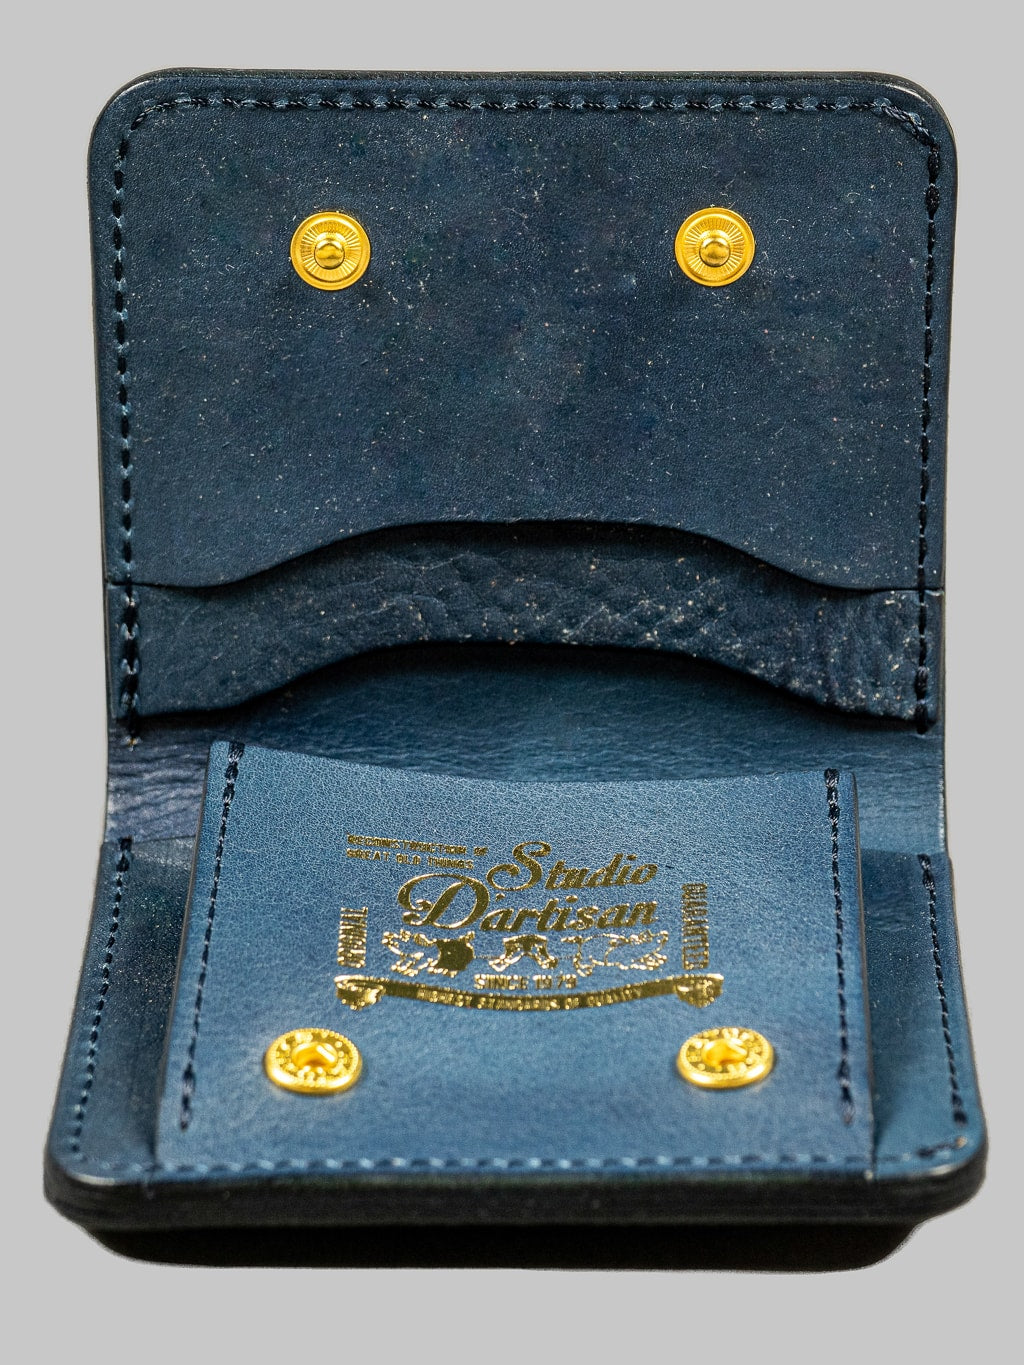 Studio Dartisan indigo leather mini wallet made in japan